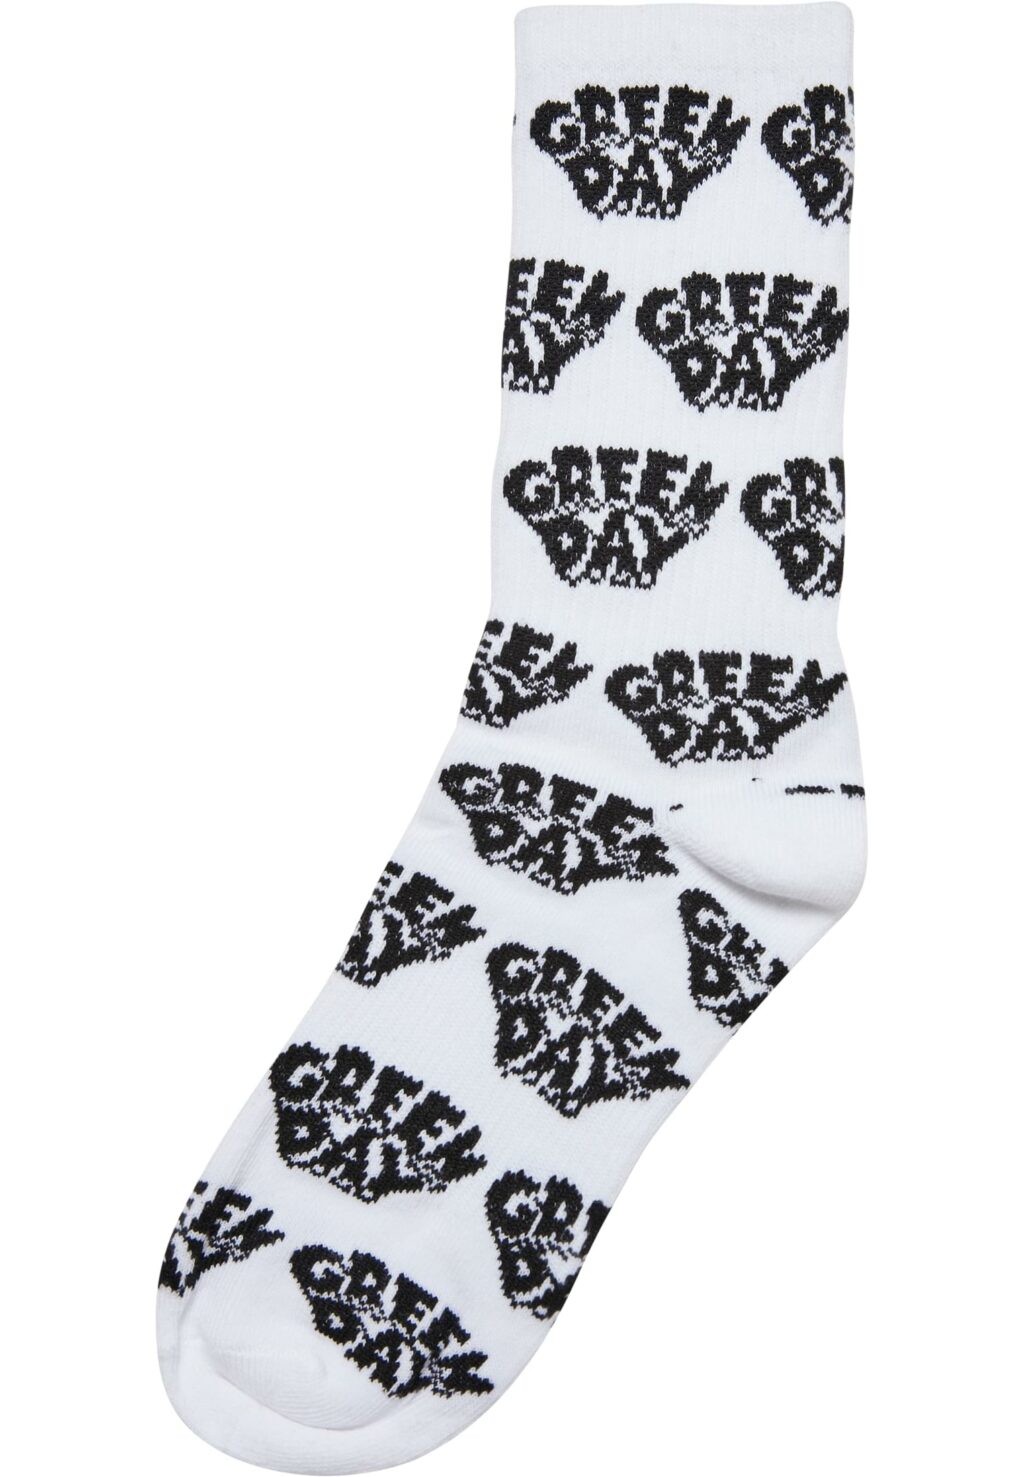 Green Day Socks 2-Pack black/white MC811